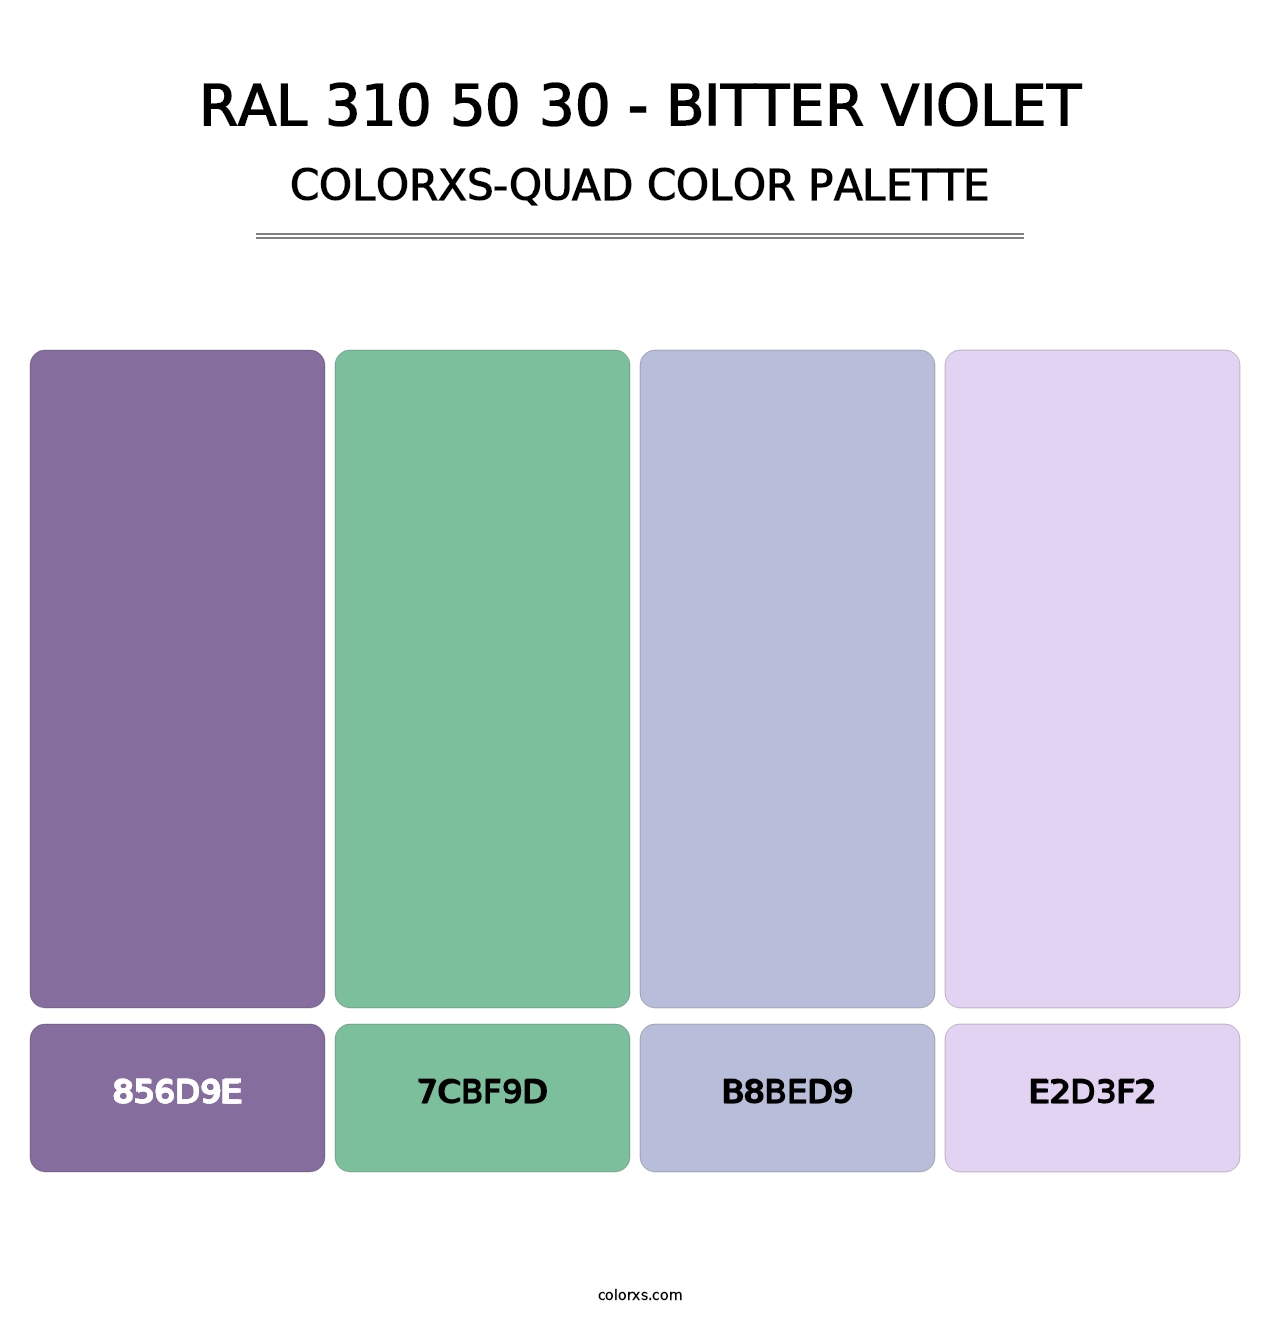 RAL 310 50 30 - Bitter Violet - Colorxs Quad Palette